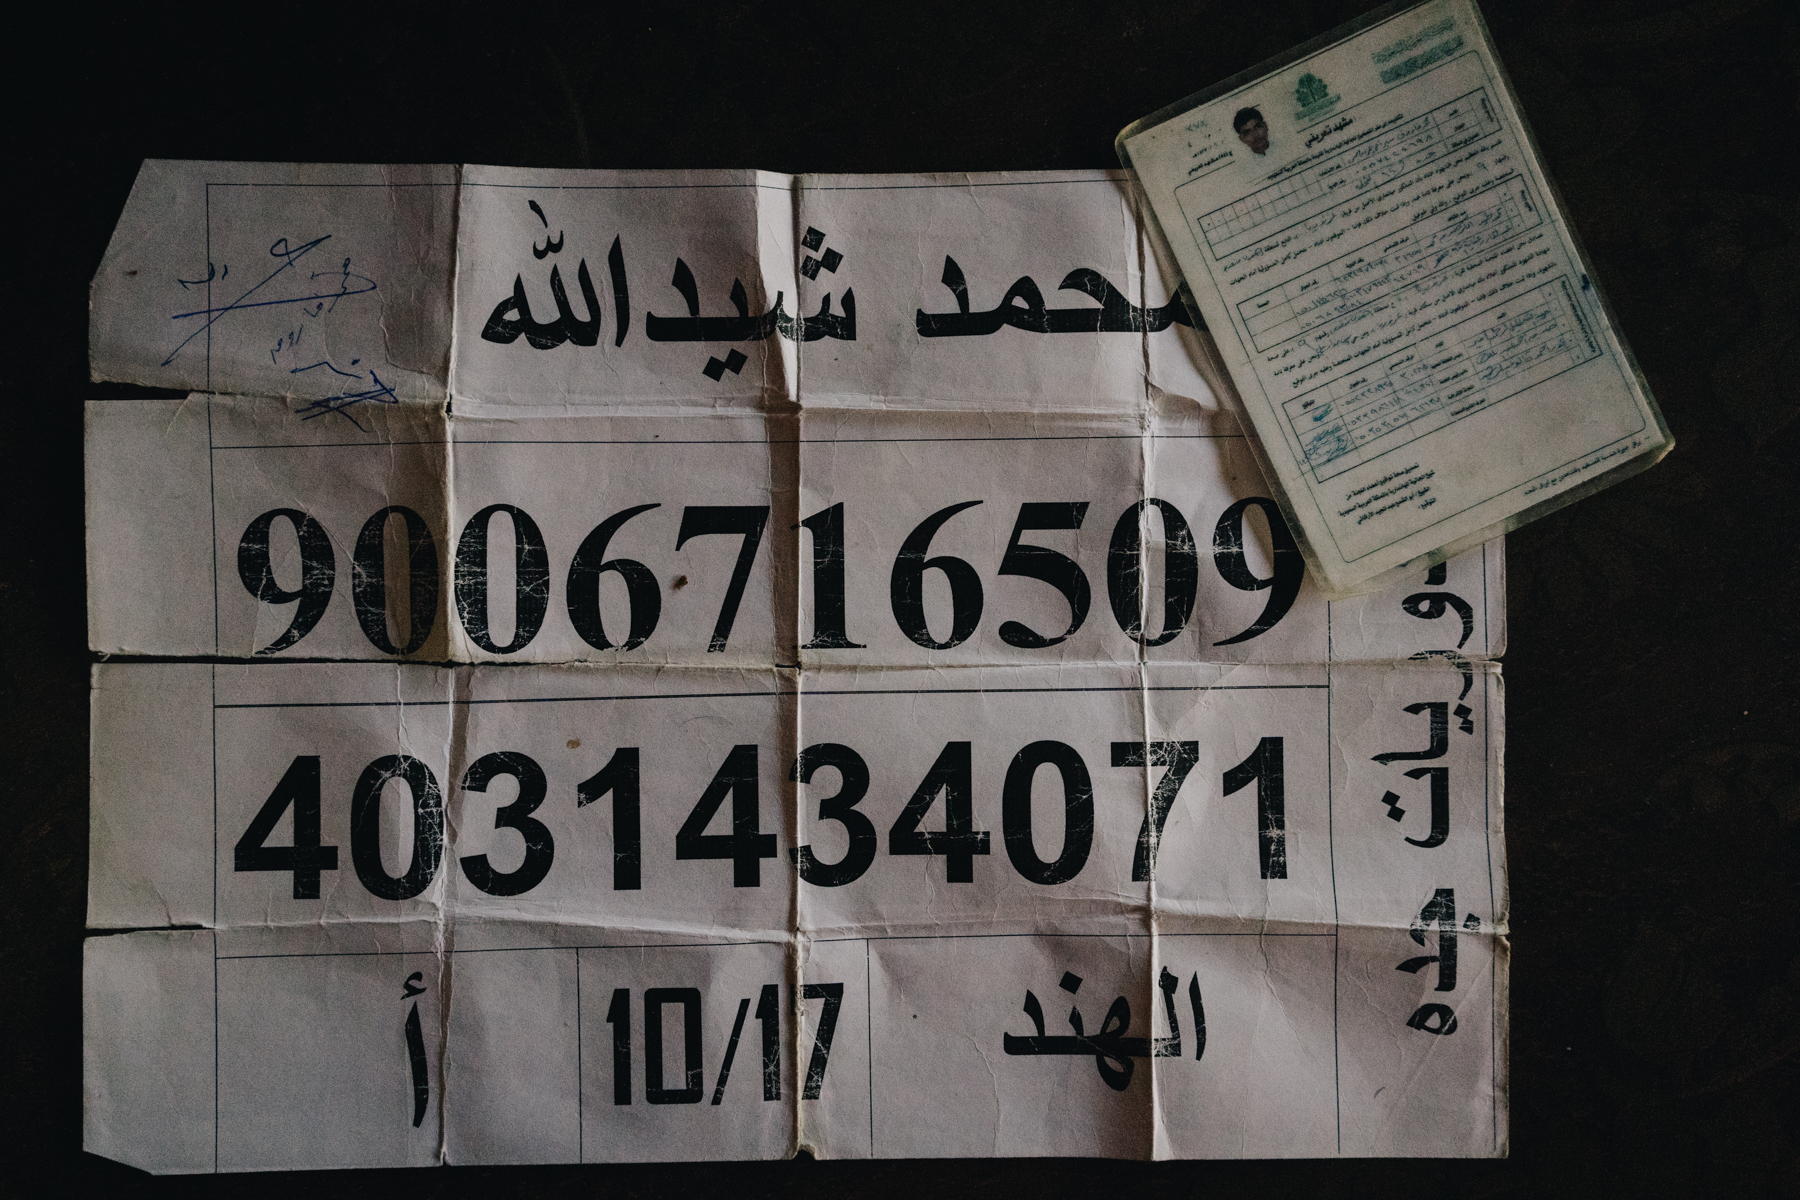 Un numéro d’identification délivré aux détenus rohingyas dans les centres de détention saoudiens (MEE/Kaamil Ahmed)